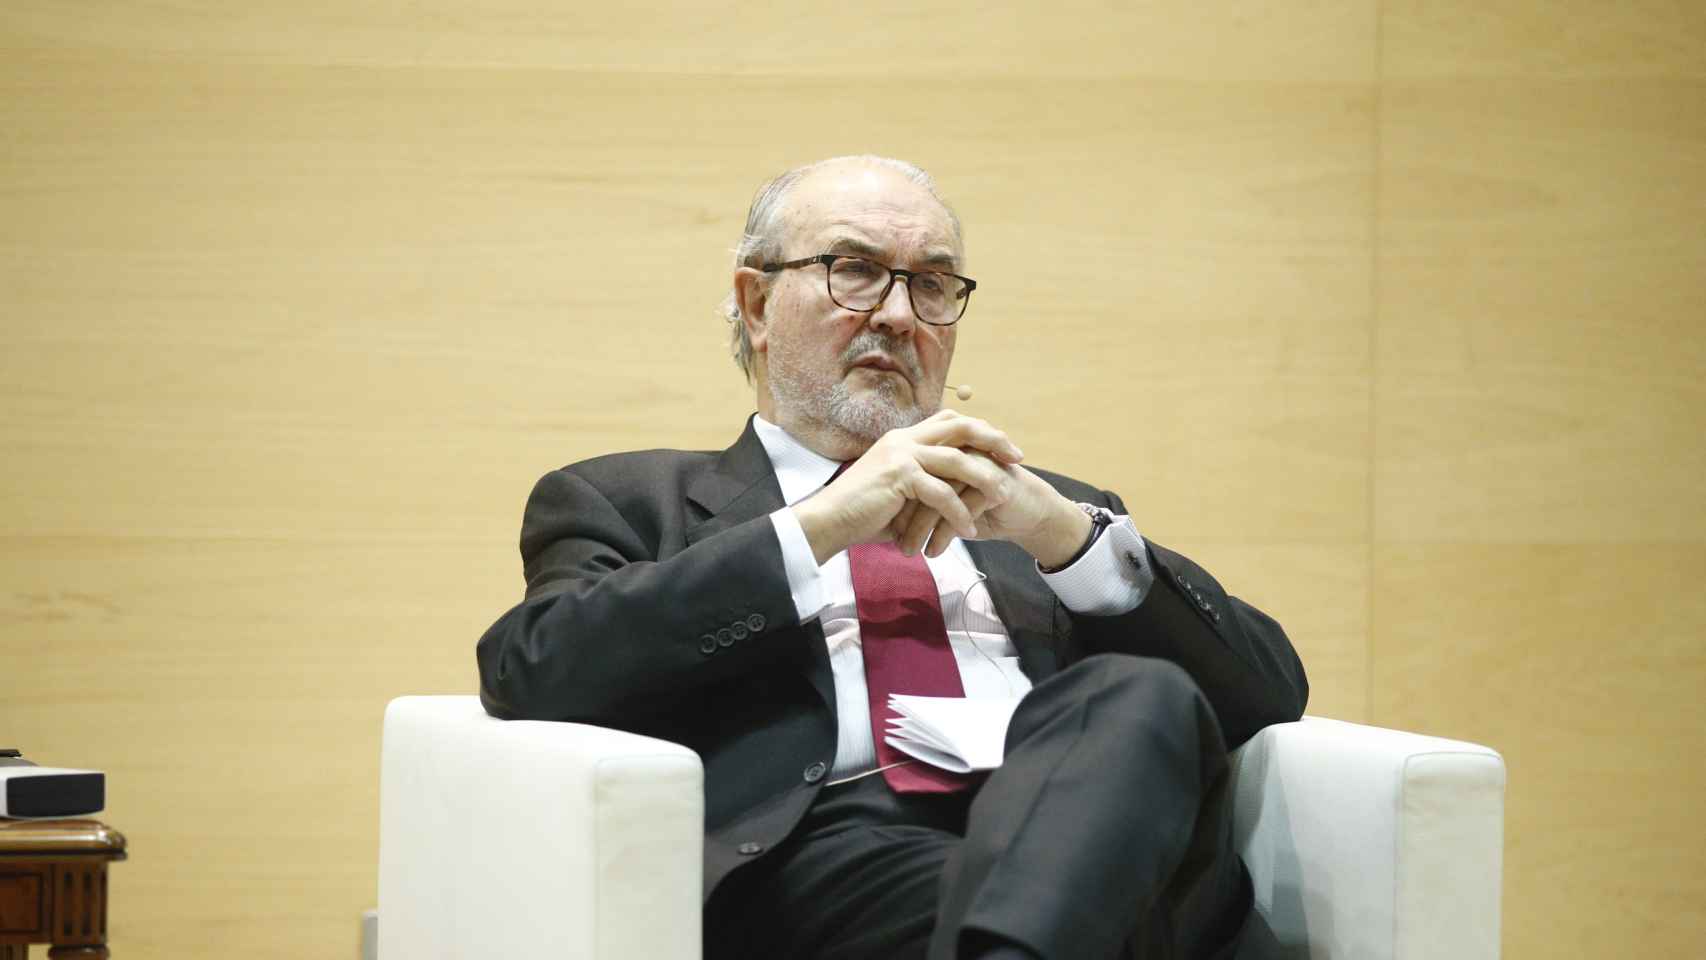 Pedro Solbes, ex vicepresidente y ex ministro de Economía de España, durante un acto en 2018.